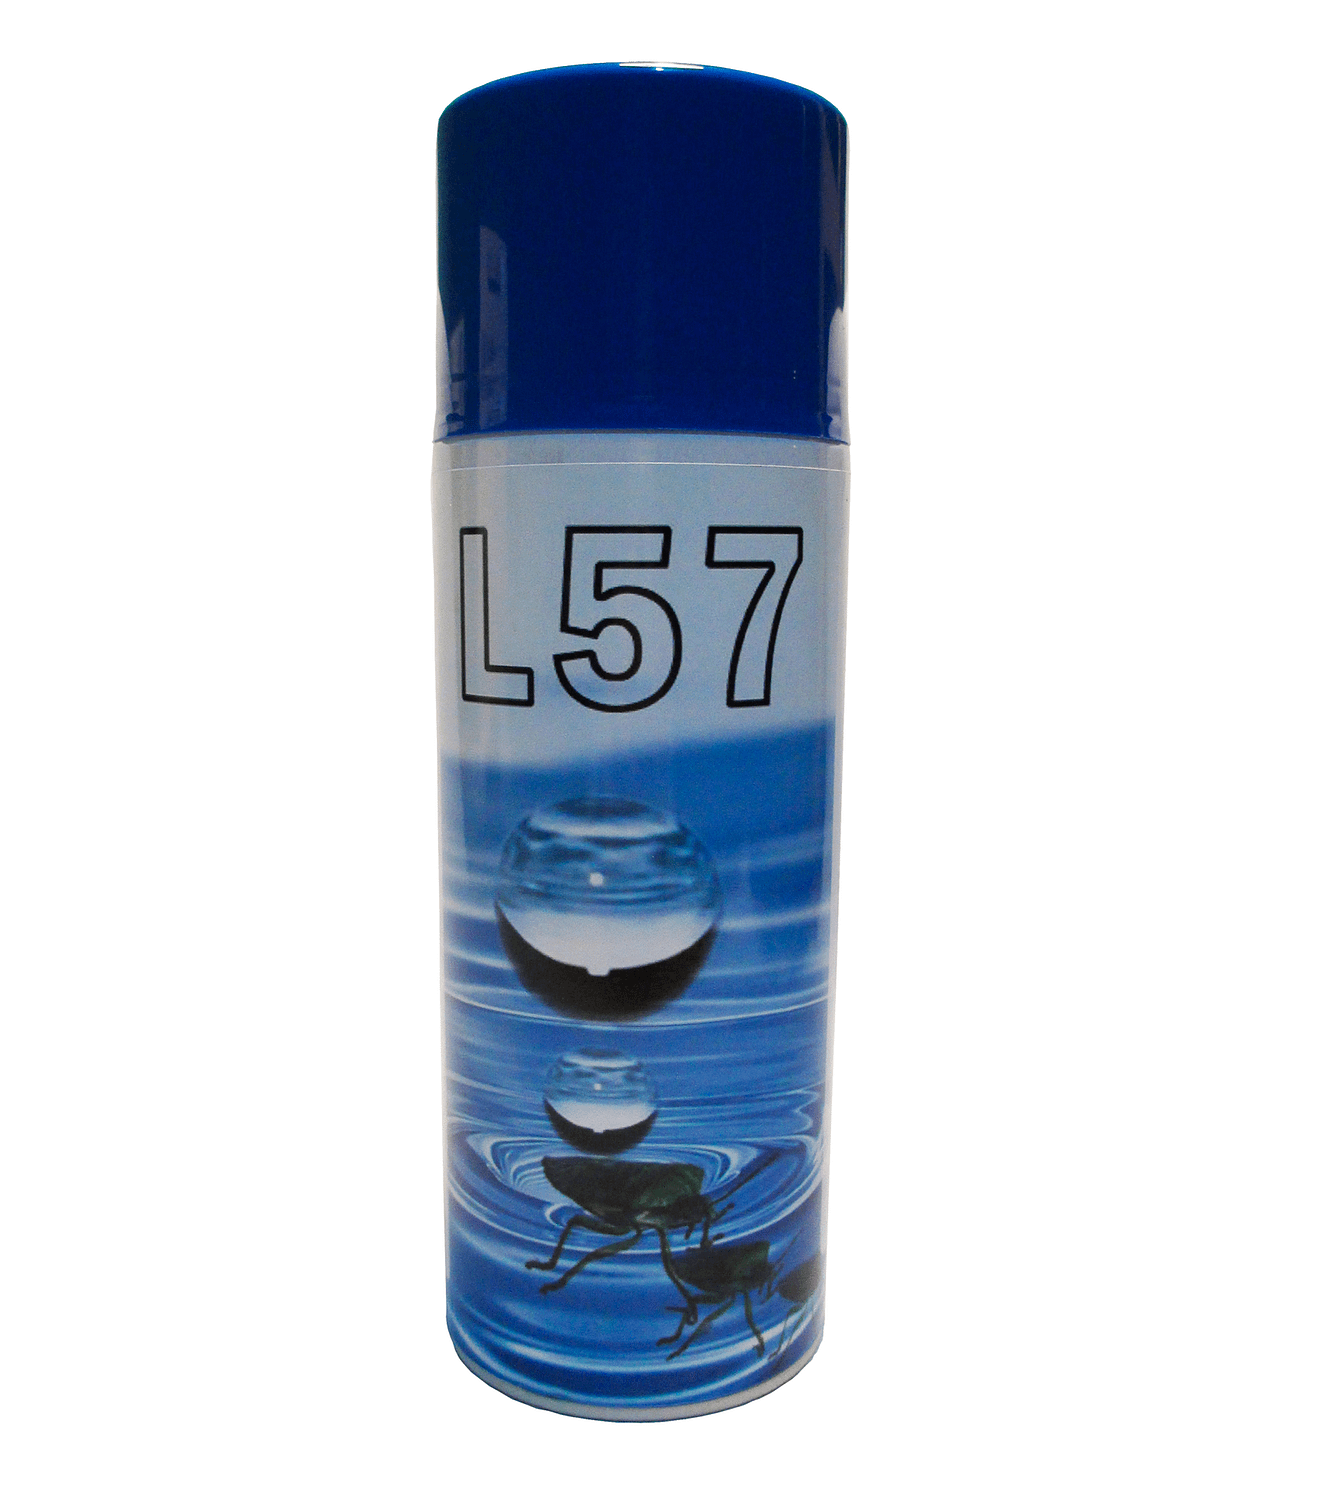 Immagine prodotti L57 spray copertina